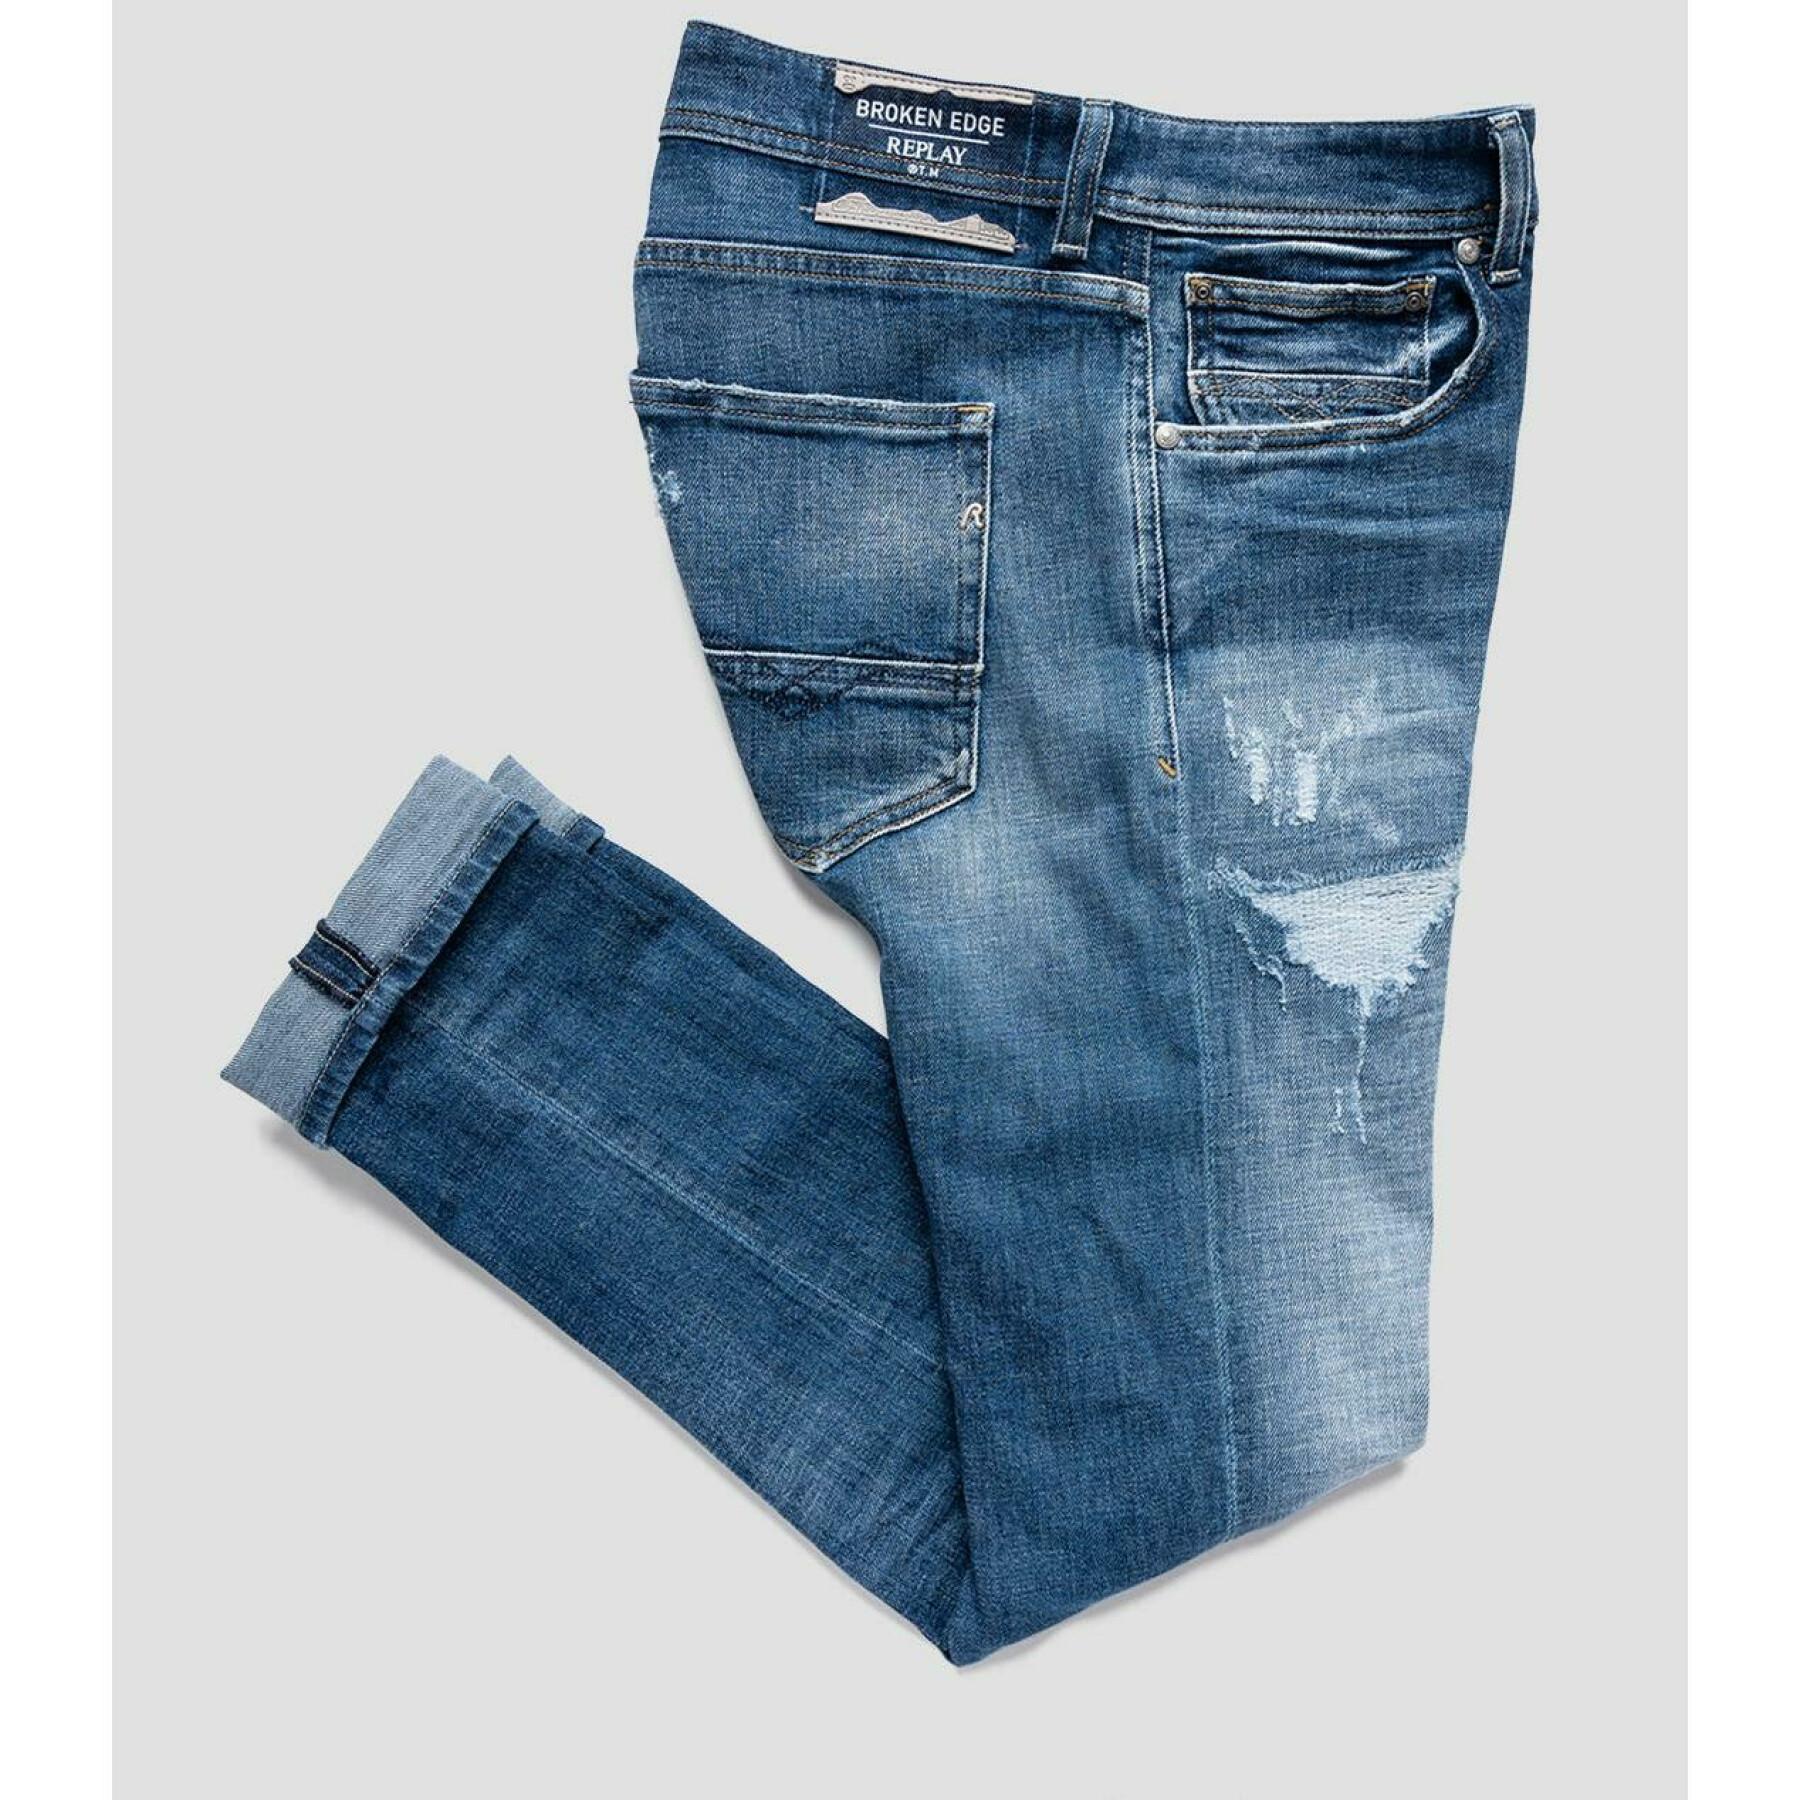 Low rise skinny jeans Replay johnfrus broken edge